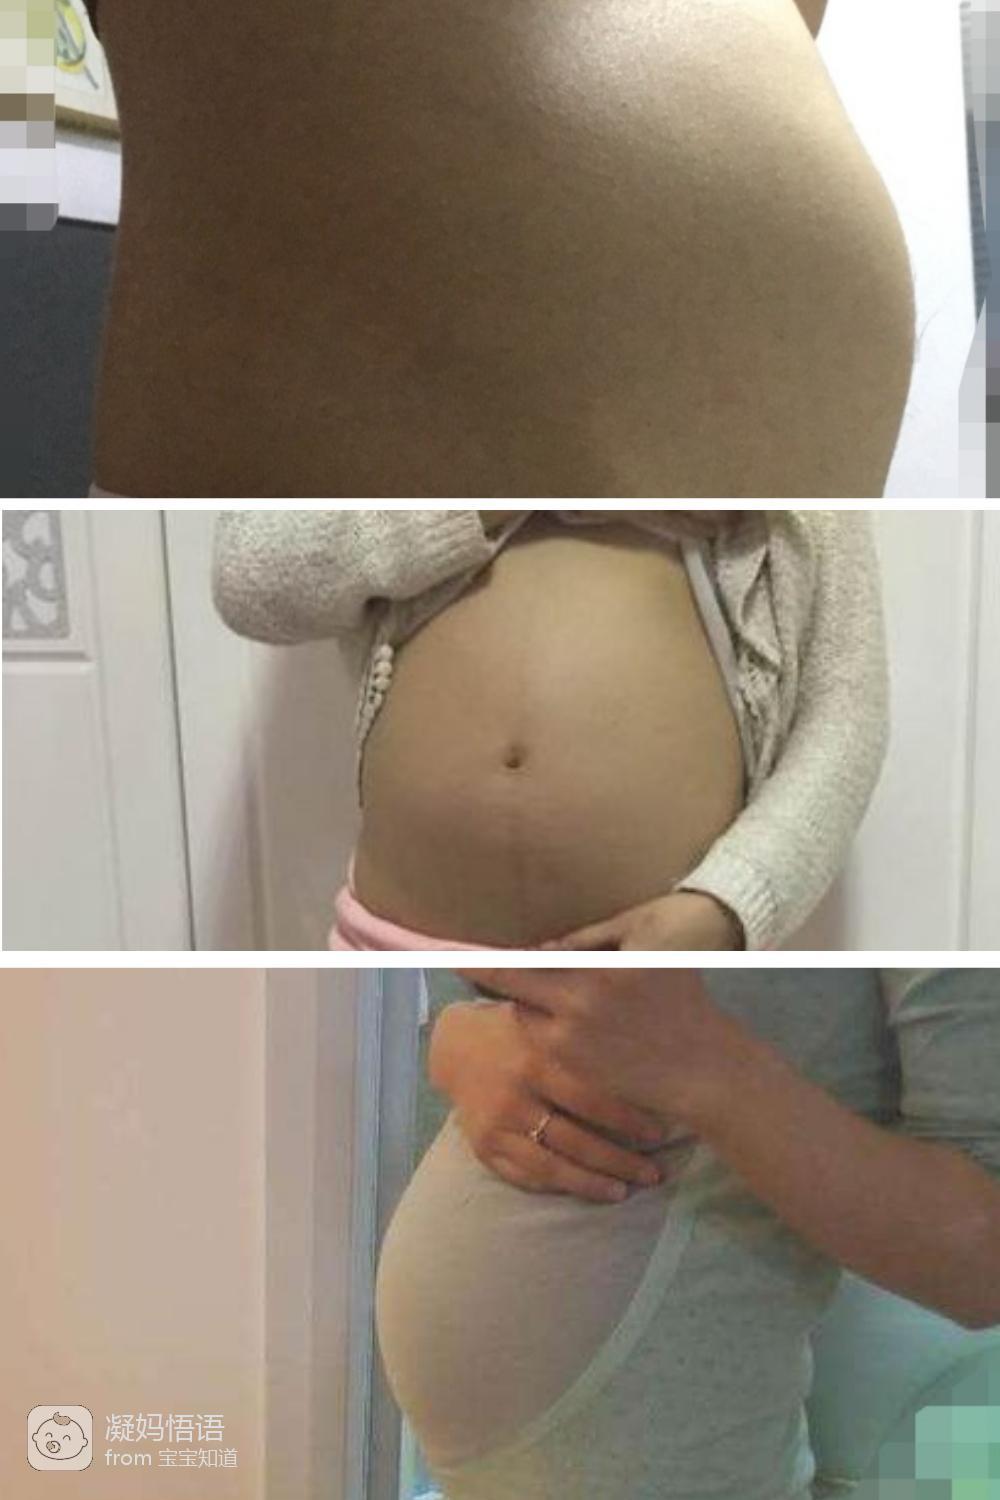 17周孕妇肚子有多大?这几张照片一目了然,